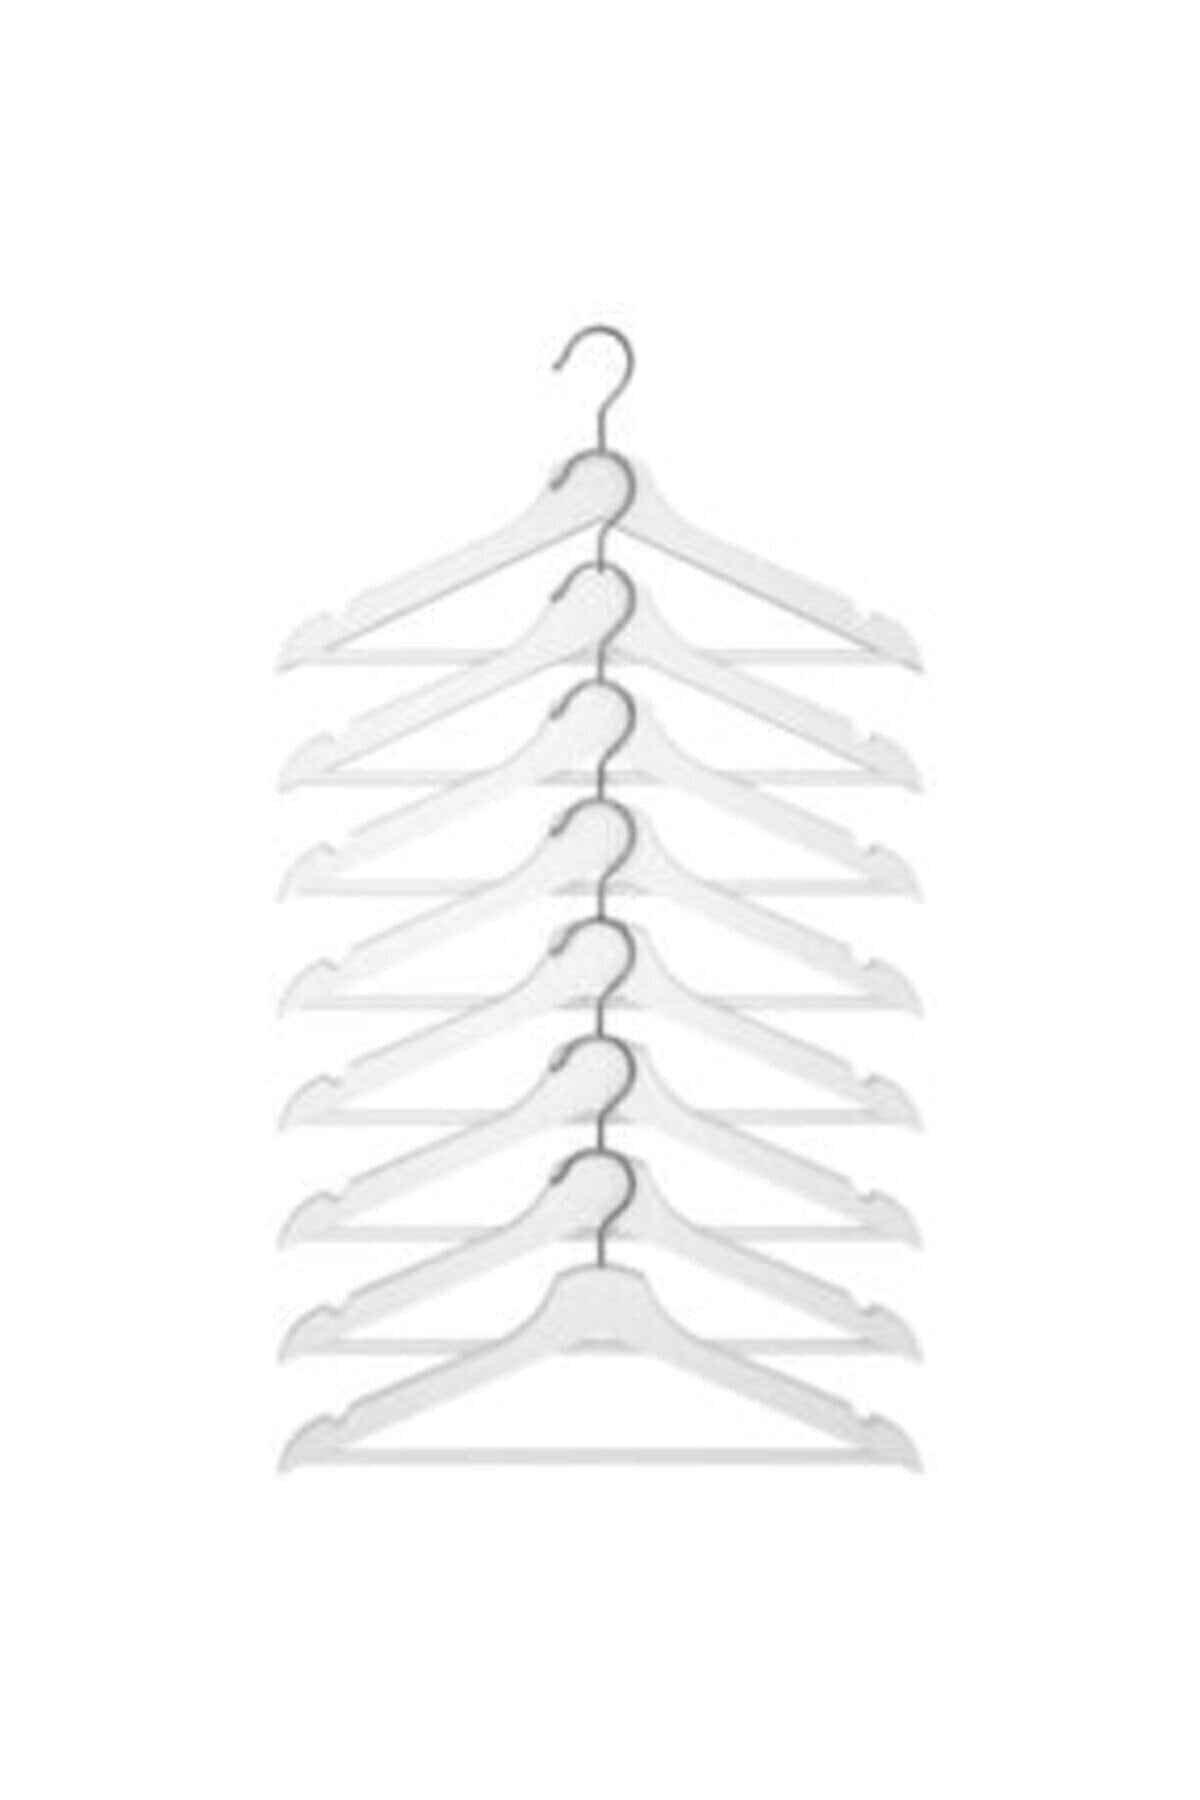 12Adet Hout Look Wit Plastic Hanger, Kleerhanger Ruimtebesparende Kleerhangers Broek Hangers Huishoudelijke Product